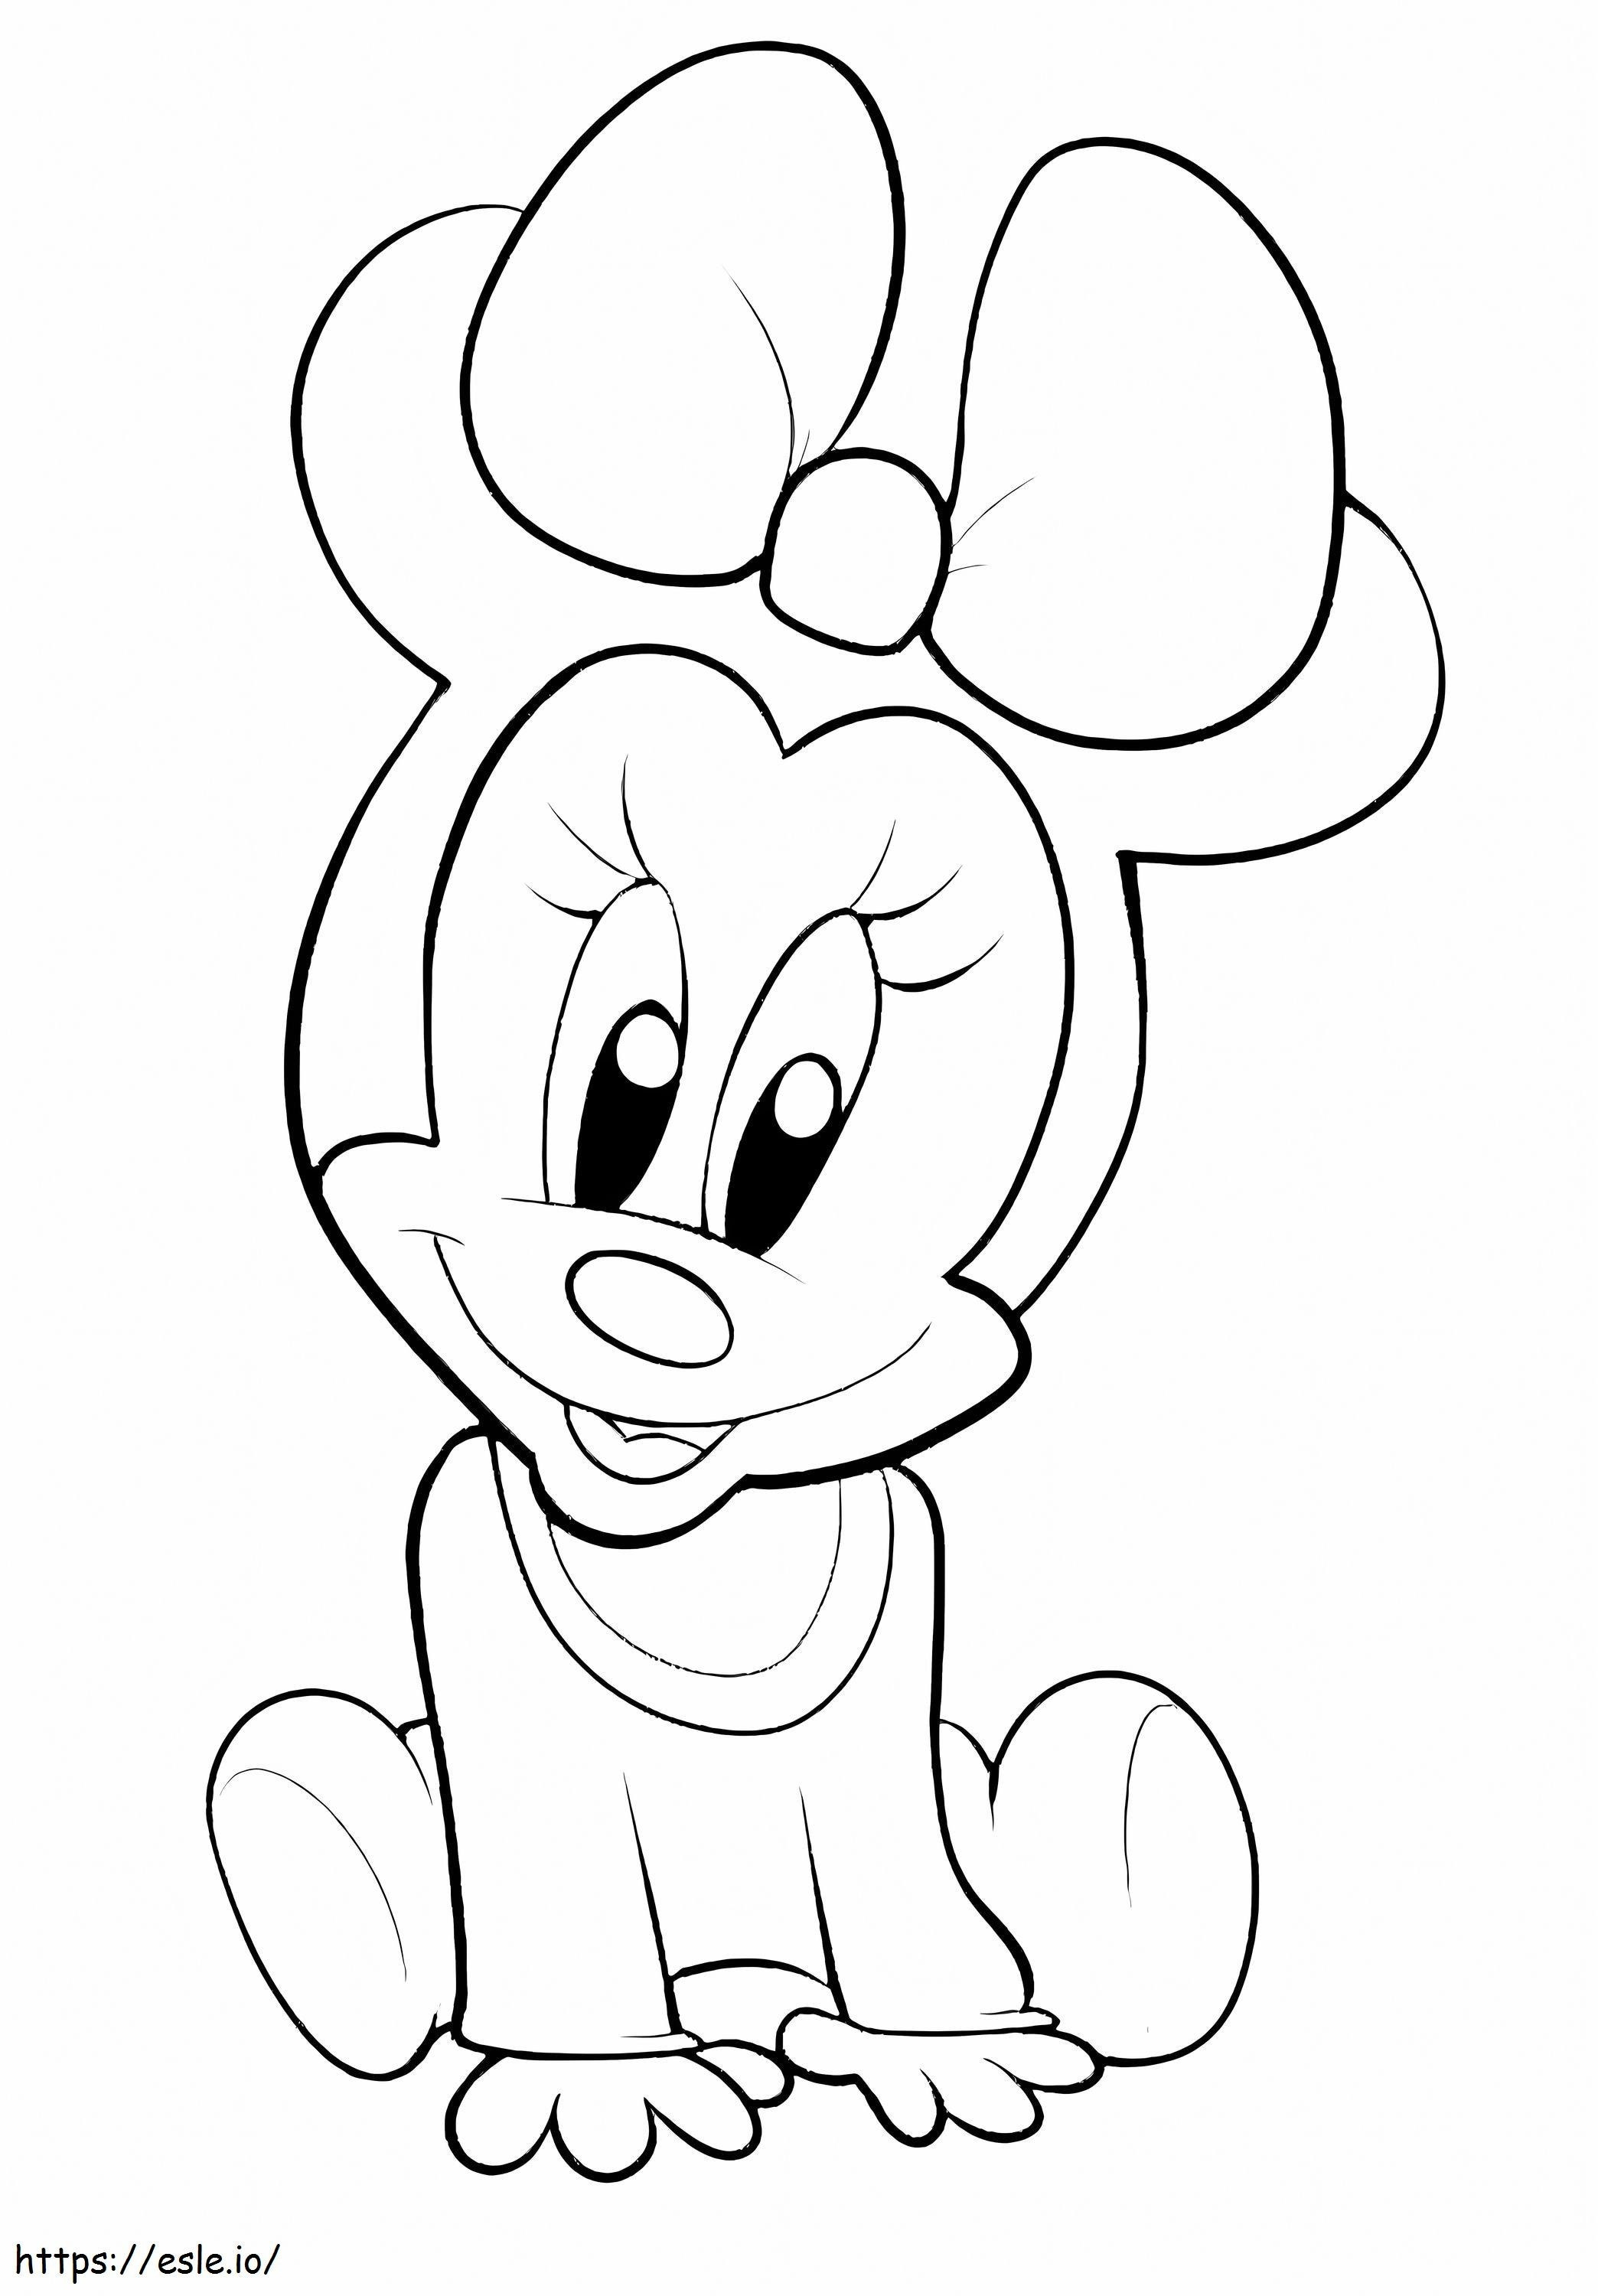 Baby Minnie Mouse seduto da colorare